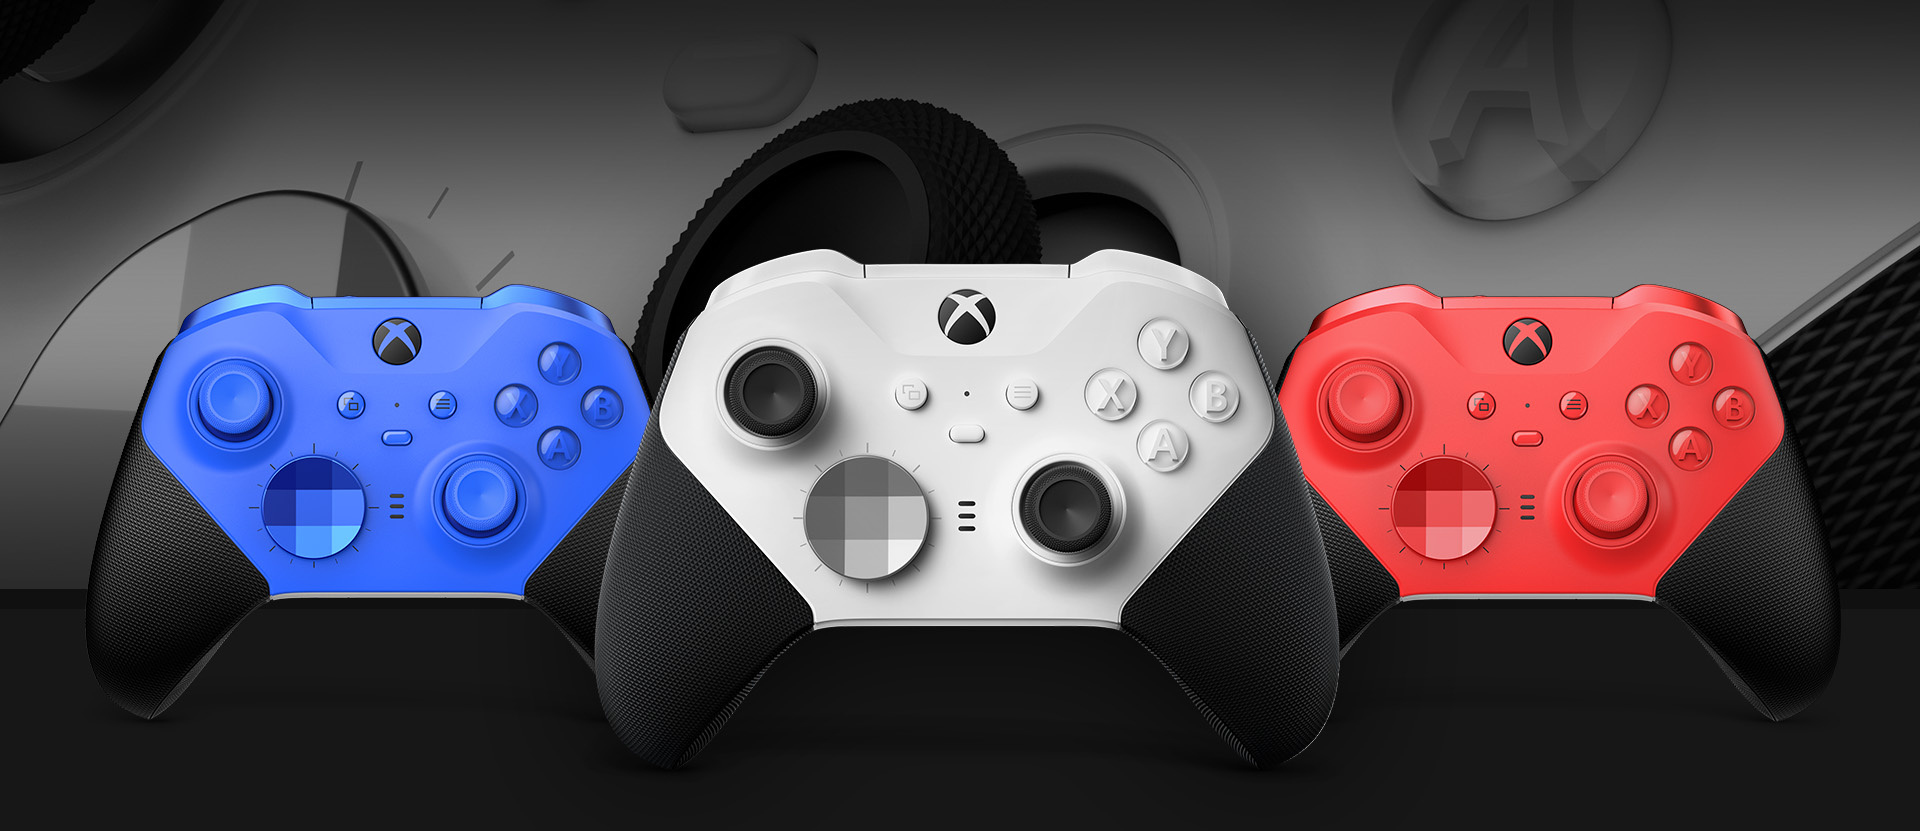 Manette sans fil Xbox Elite Series 2 - Core (Blanche) vue de face avec les autres couleurs présentées à côté et un gros plan sur le joystick et la matière de la manette en arrière-plan.